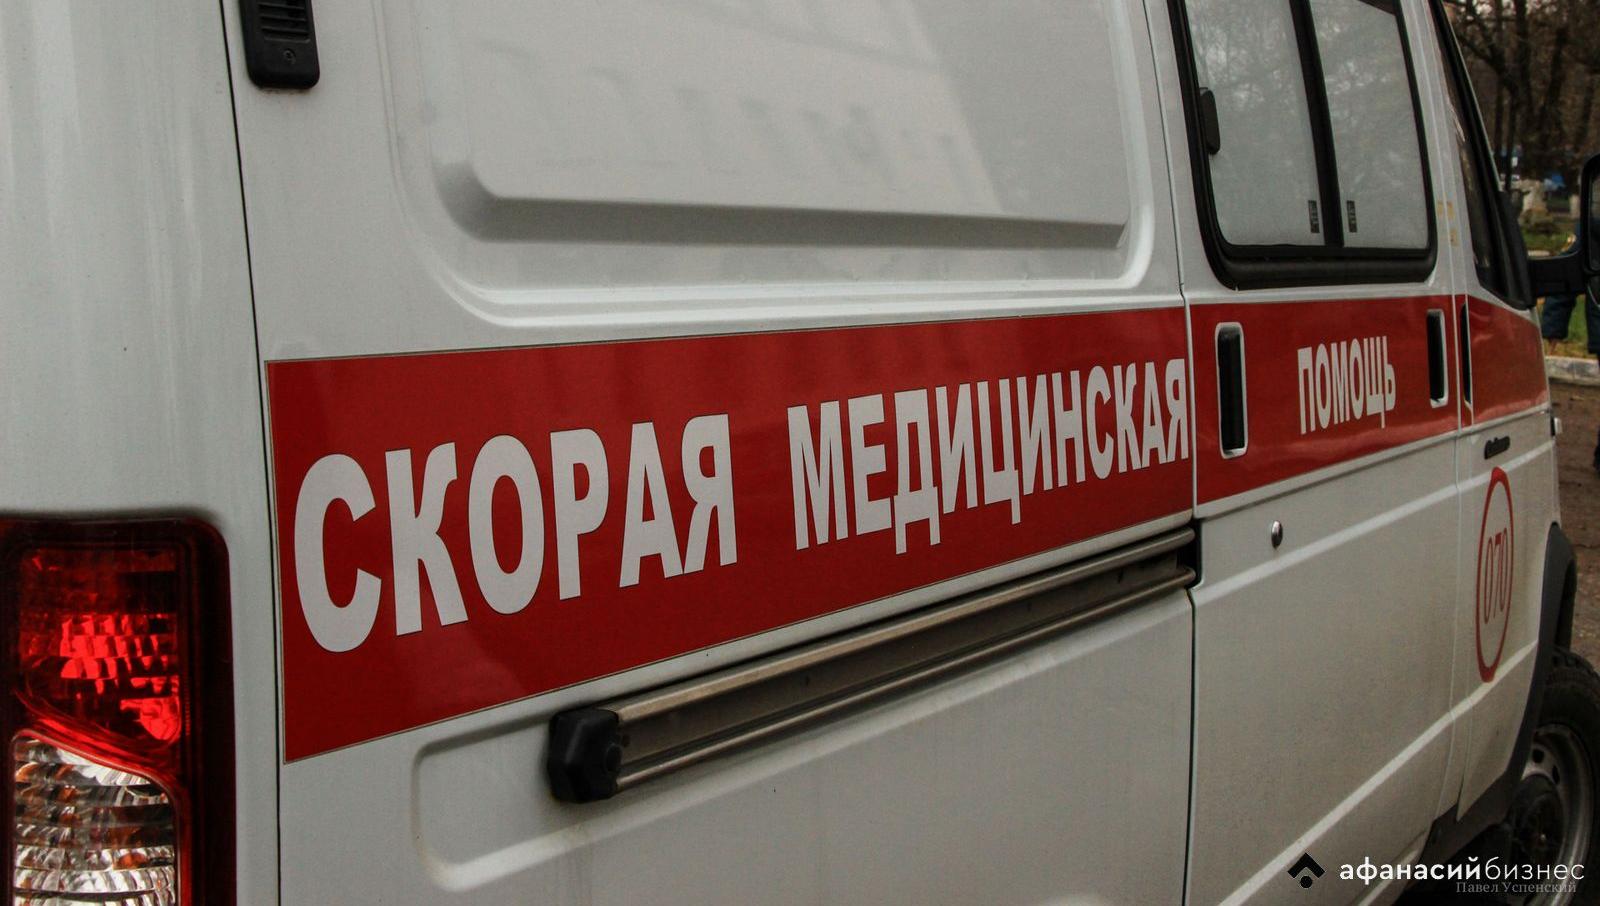 Момент ДТП с машиной скорой помощи в Кимрах Тверской области попал на видео